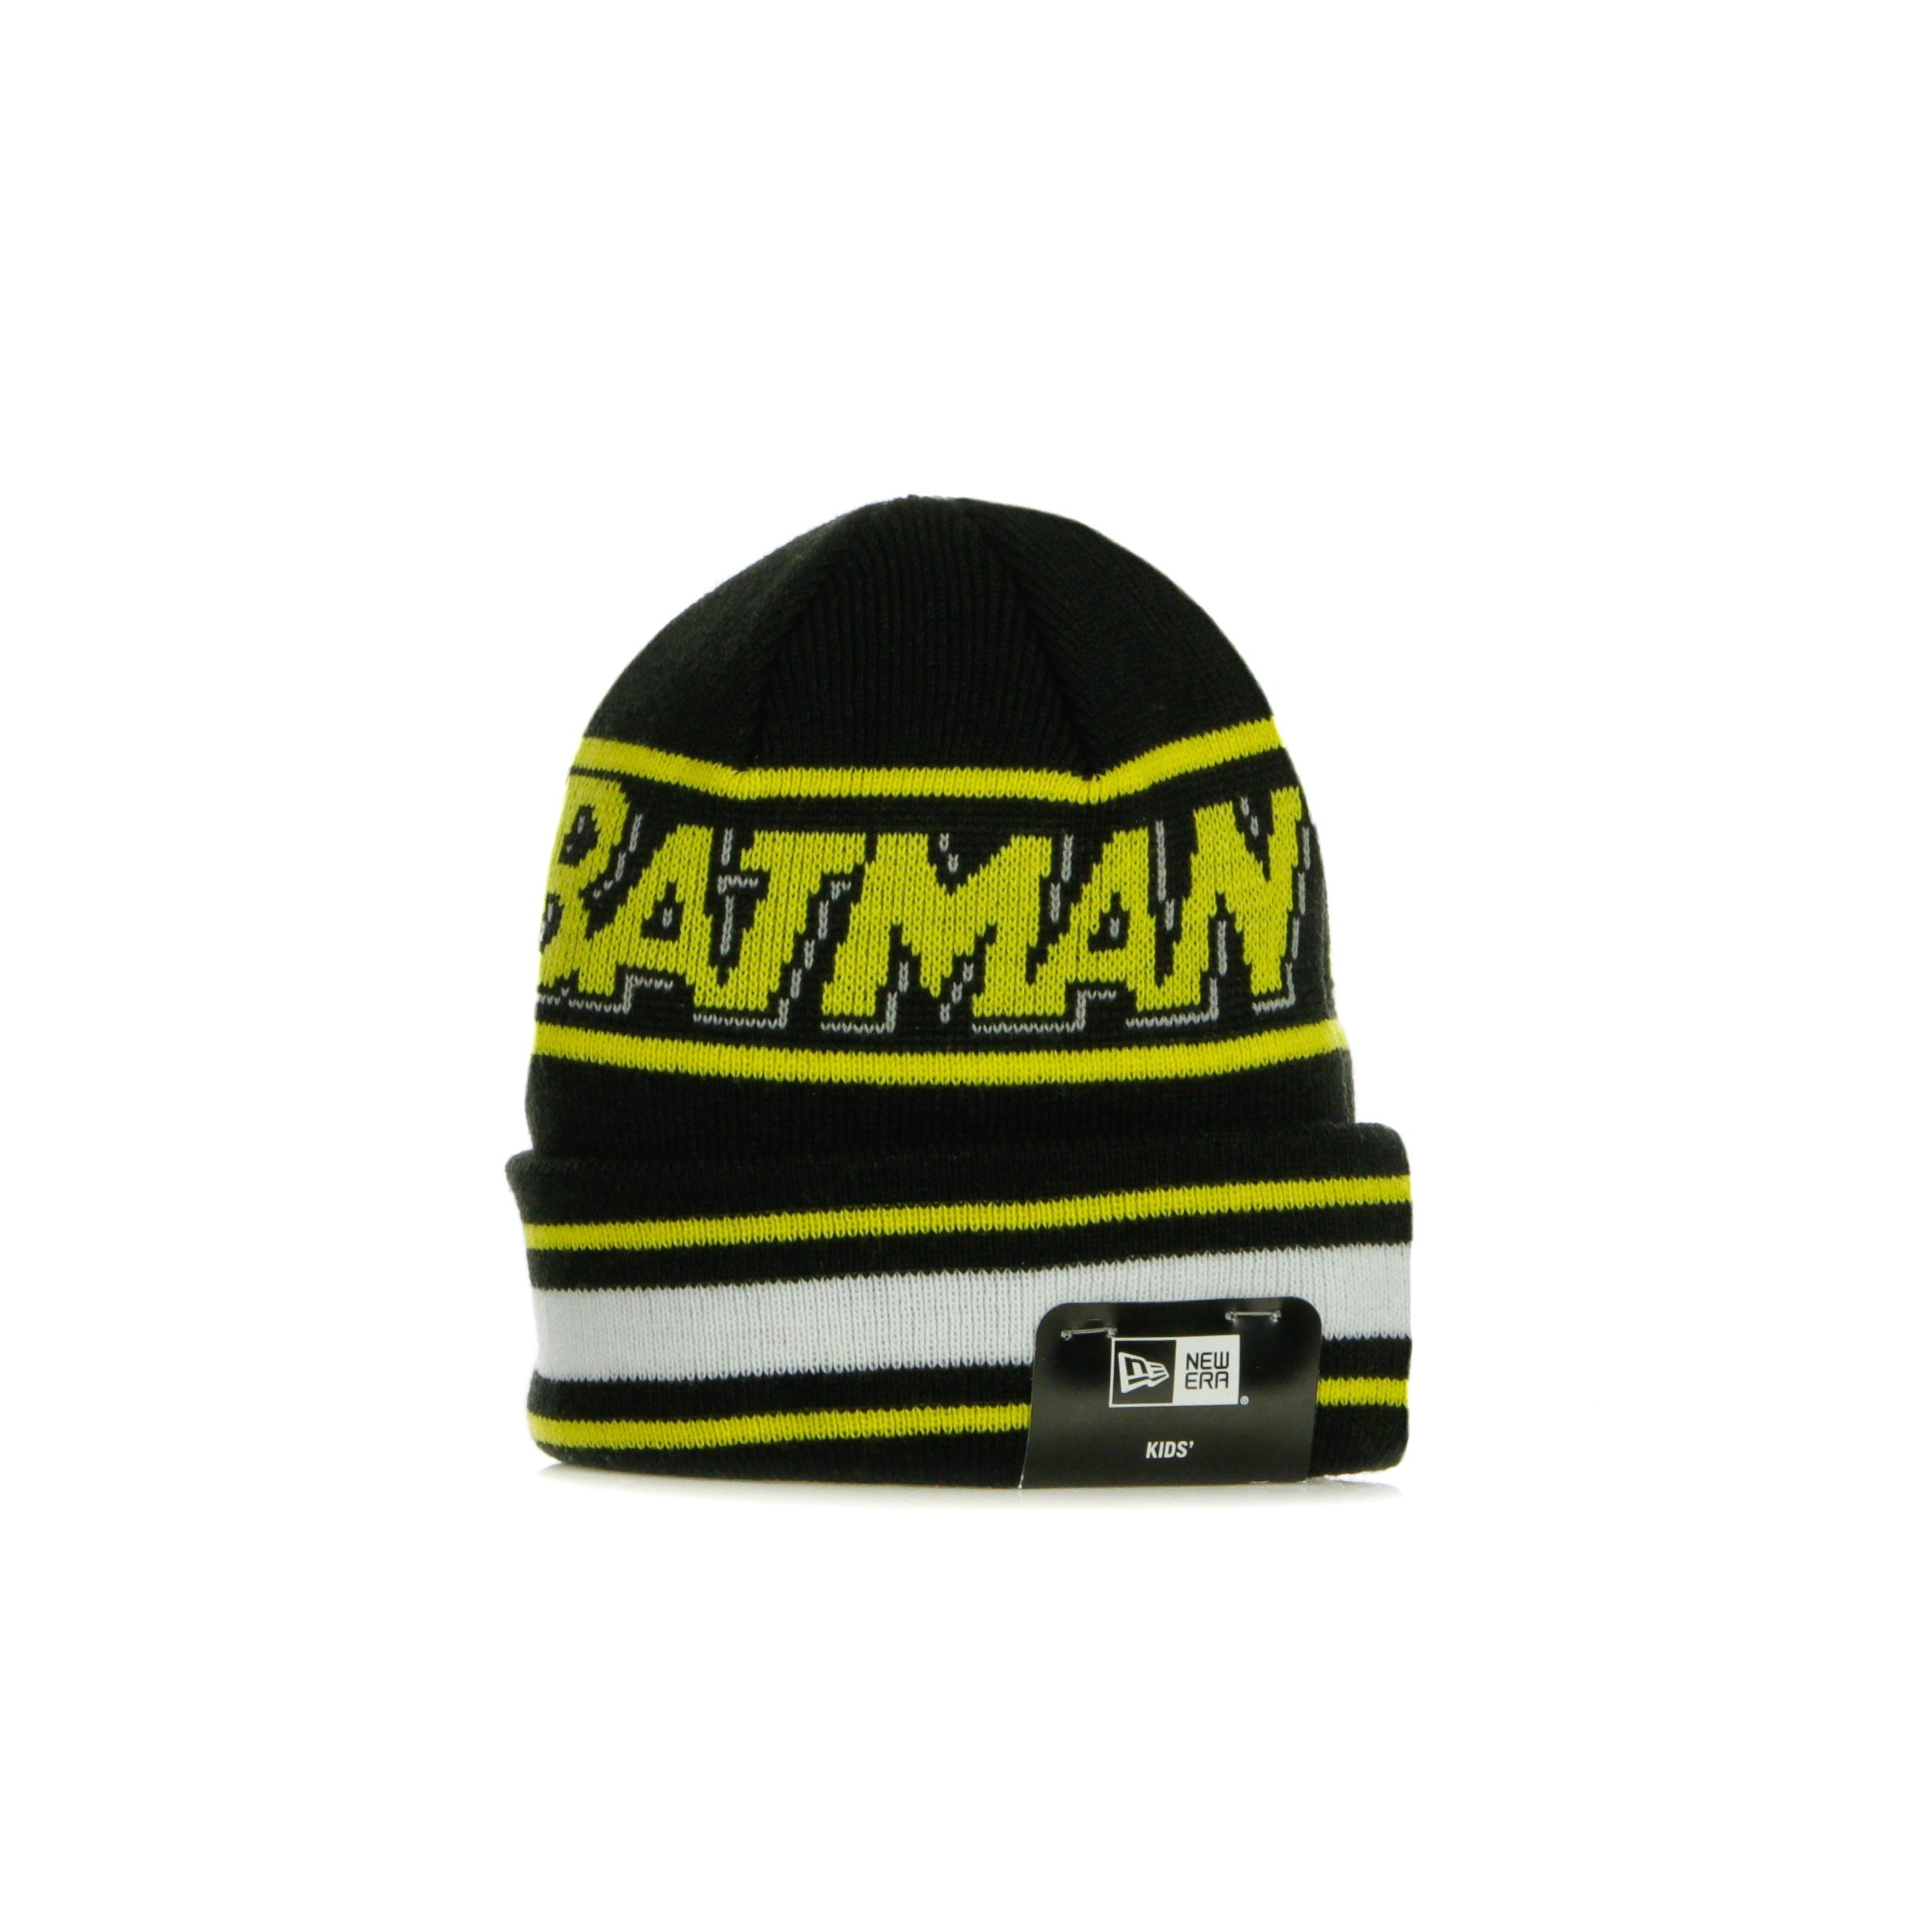 Bambino Ne Kids Character Knit Batman Black/yellow